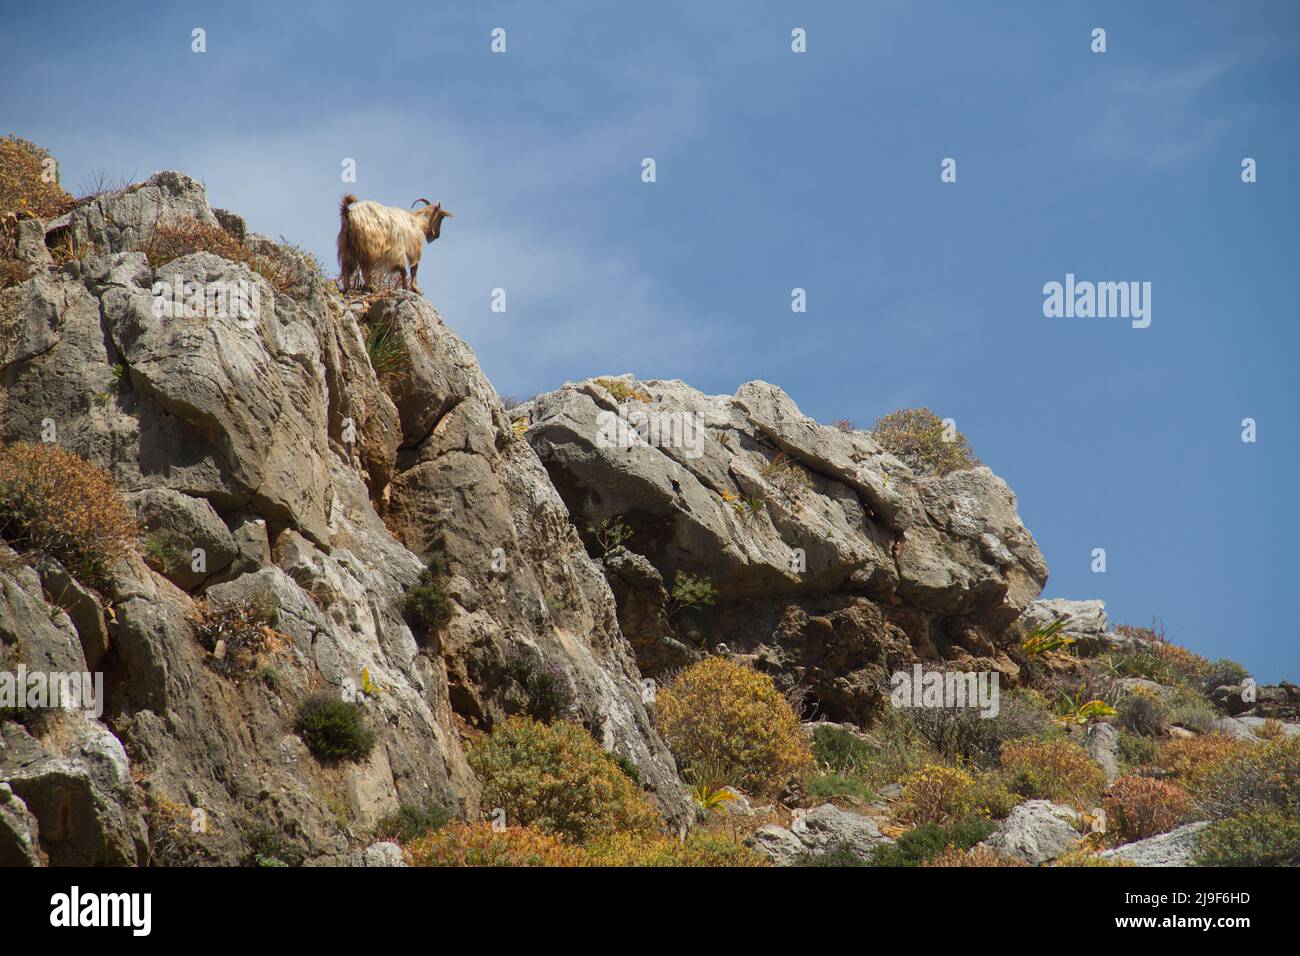 Graue haarige Ziege, die unter blauem Himmel auf Felsen klettert Stockfoto